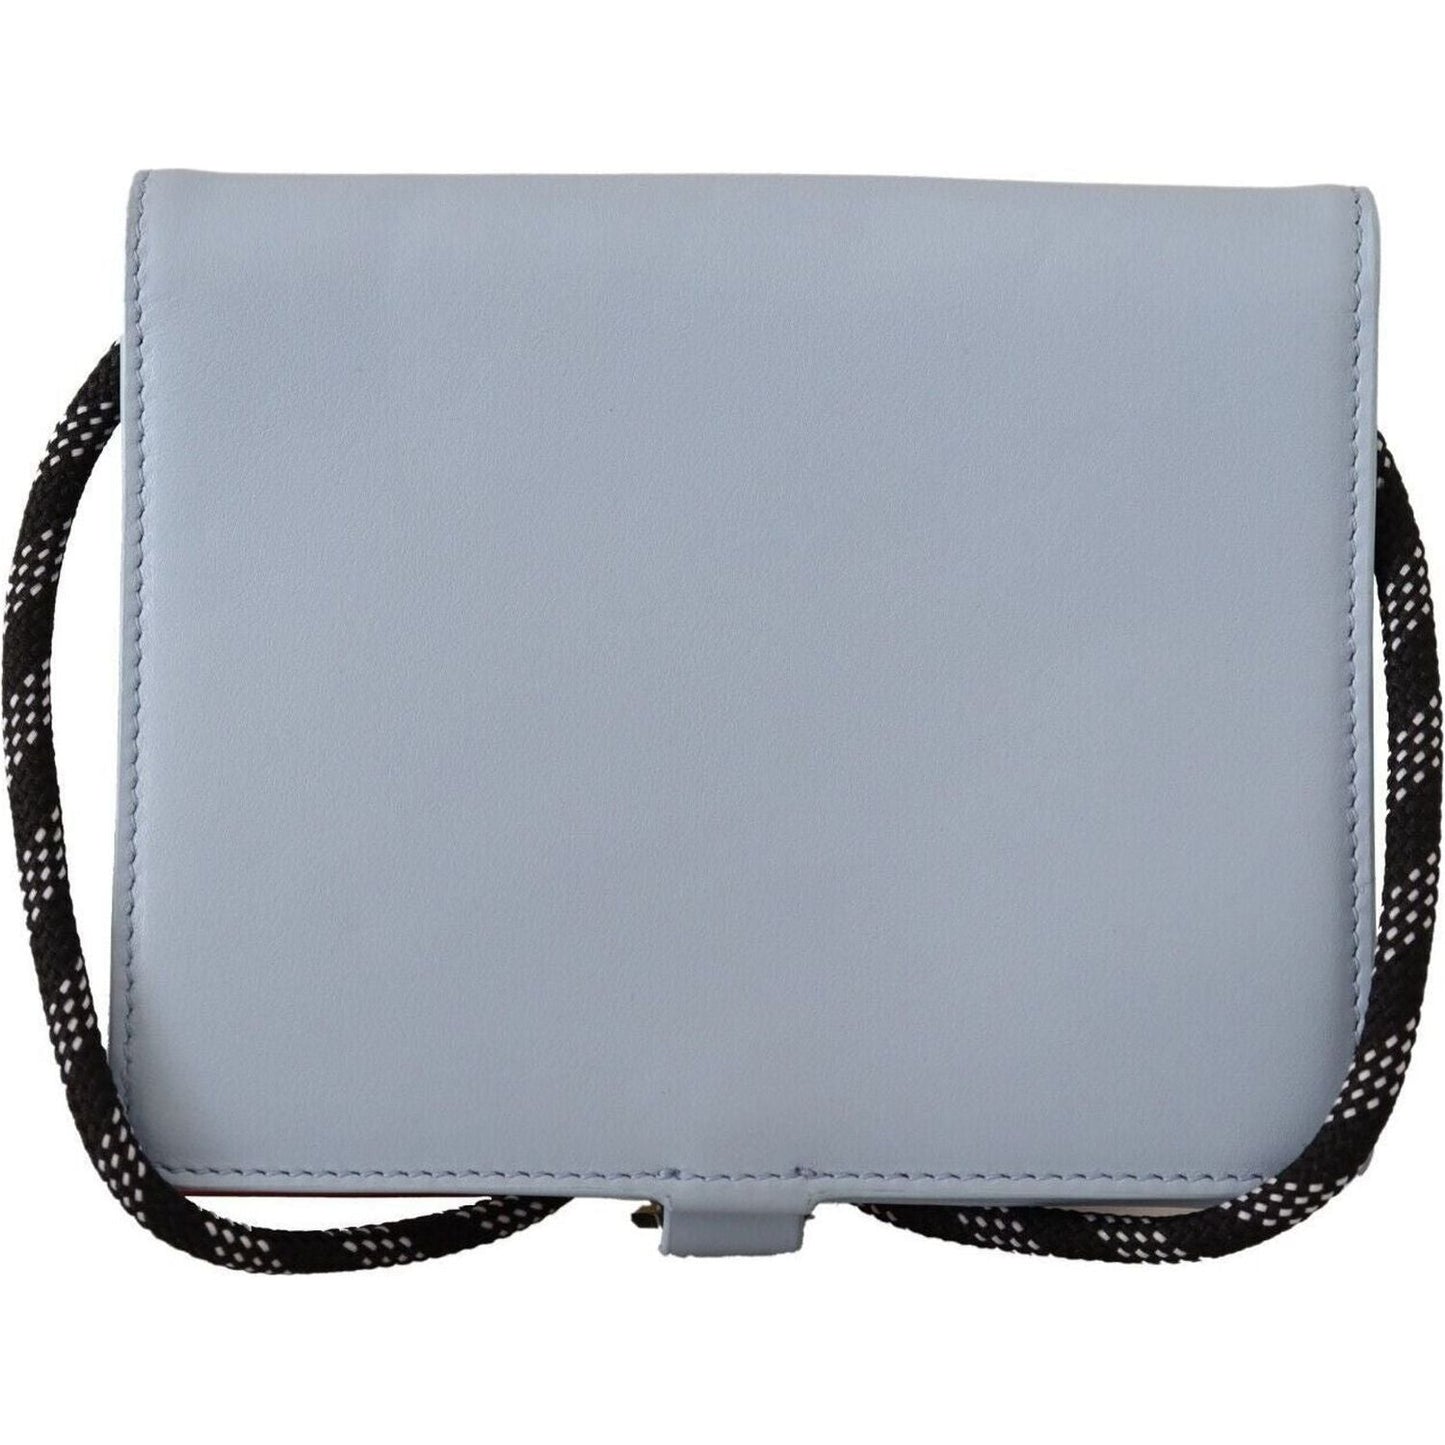 Dolce & Gabbana Elegant Light Blue Leather Bifold Wallet light-blue-leather-mini-bifold-sling-purse-wallet